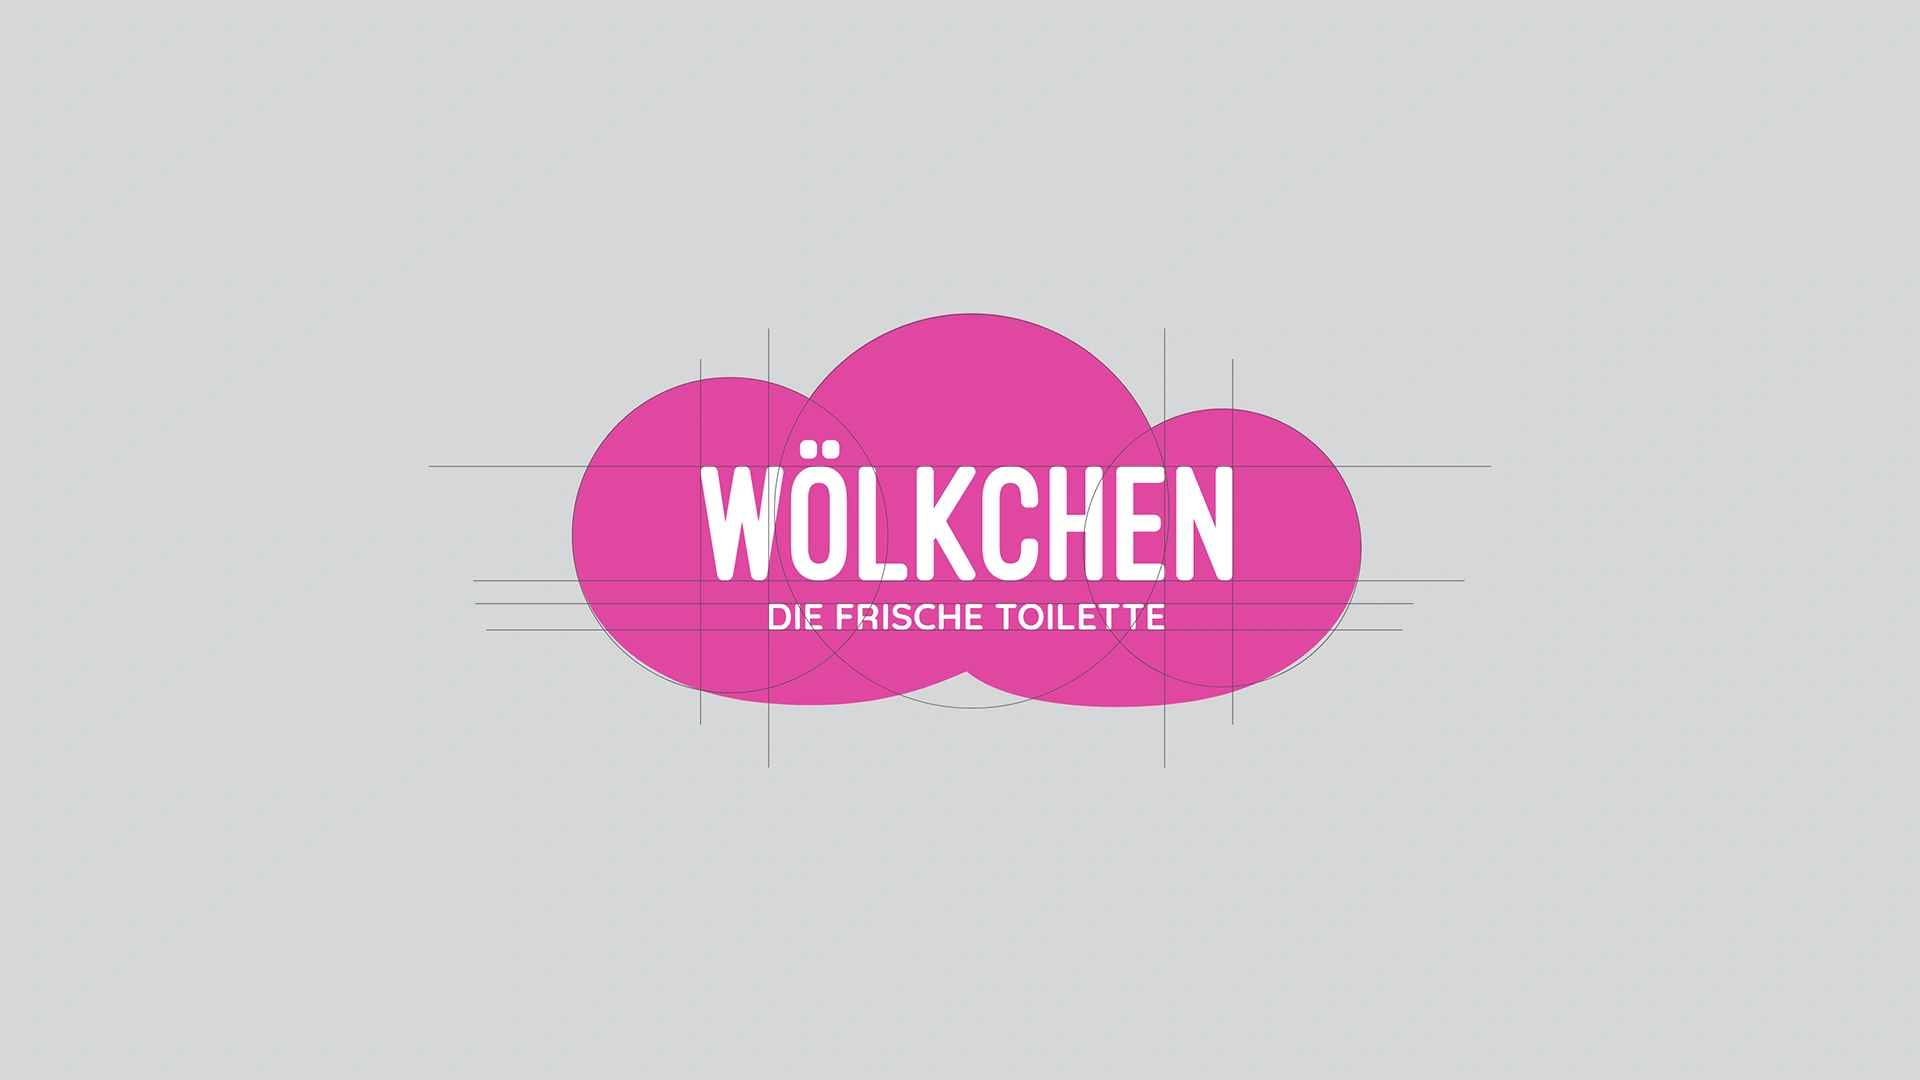 Ein Bild zeigt das Logo von Wölkchen - die frische Toilette.